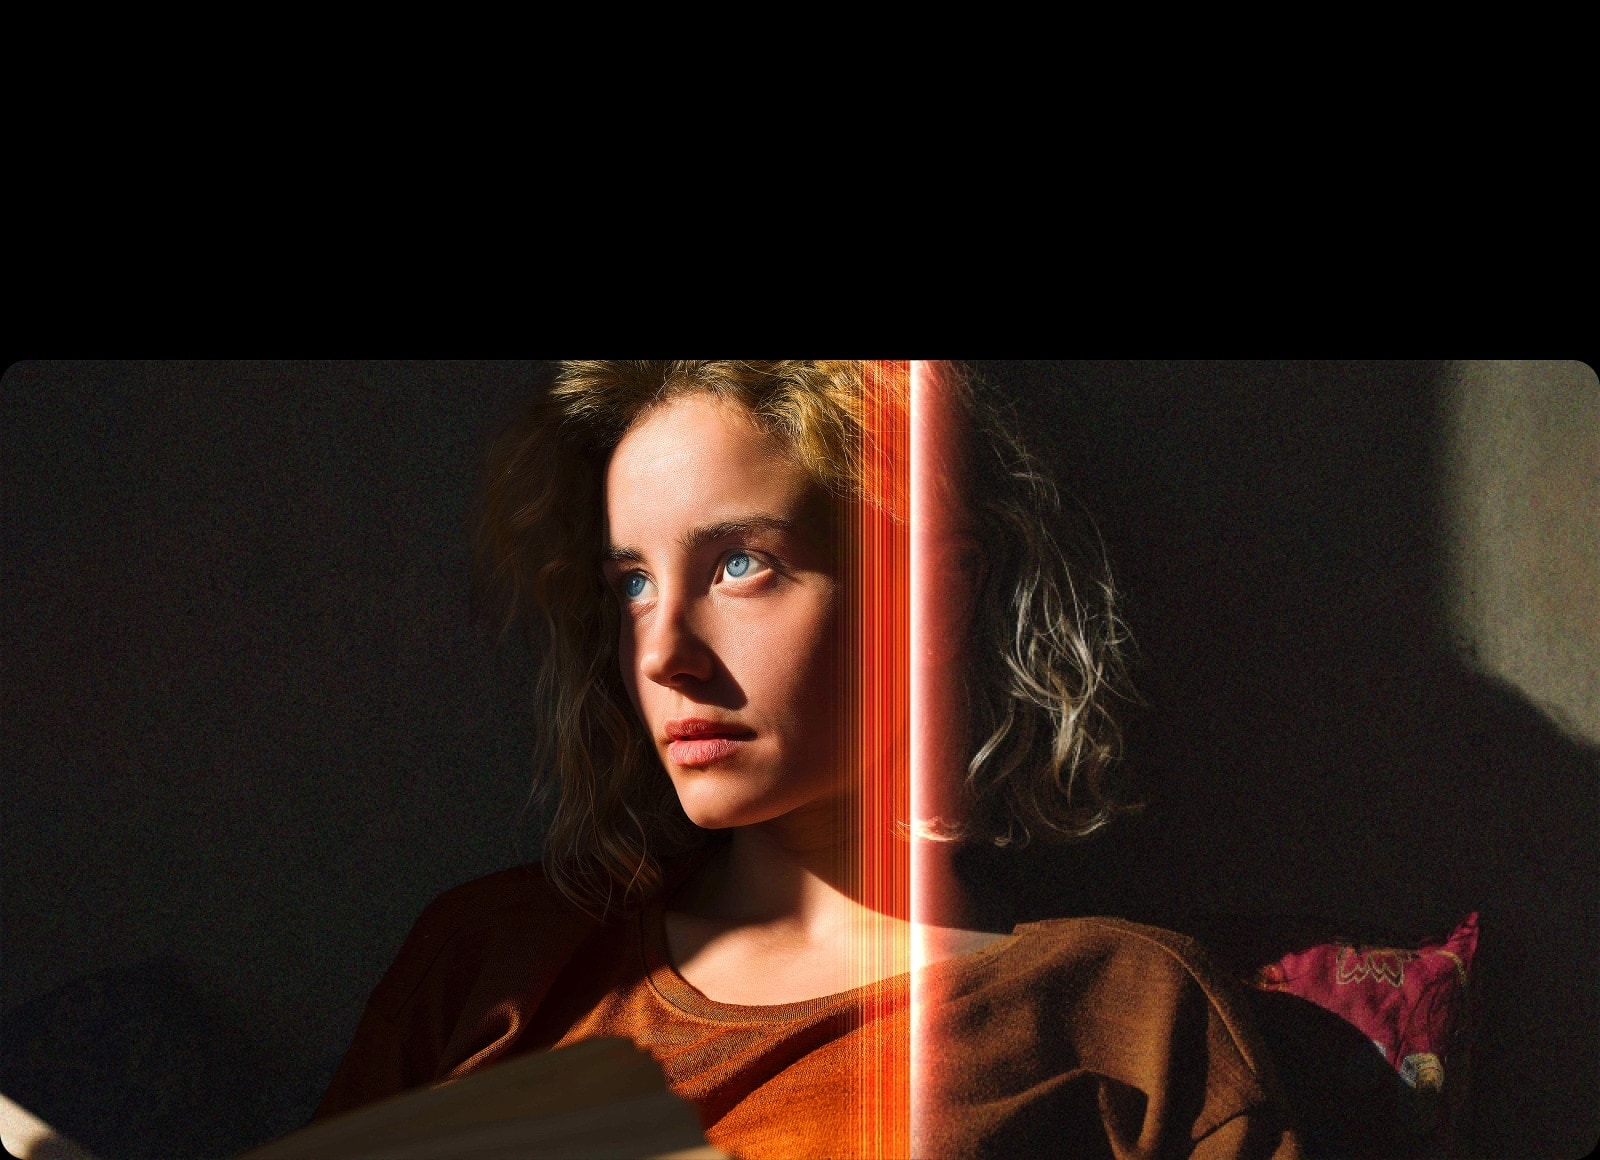 Eine Frau mit strahlend blauen Augen und einem orangefarbenen Oberteil in einem dunklen Raum. Rote Linien, die AI-Verfeinerungen darstellen, bedecken einen Teil ihres Gesichts, das hell und detailliert ist, während der Rest des Bildes stumpf aussieht. 